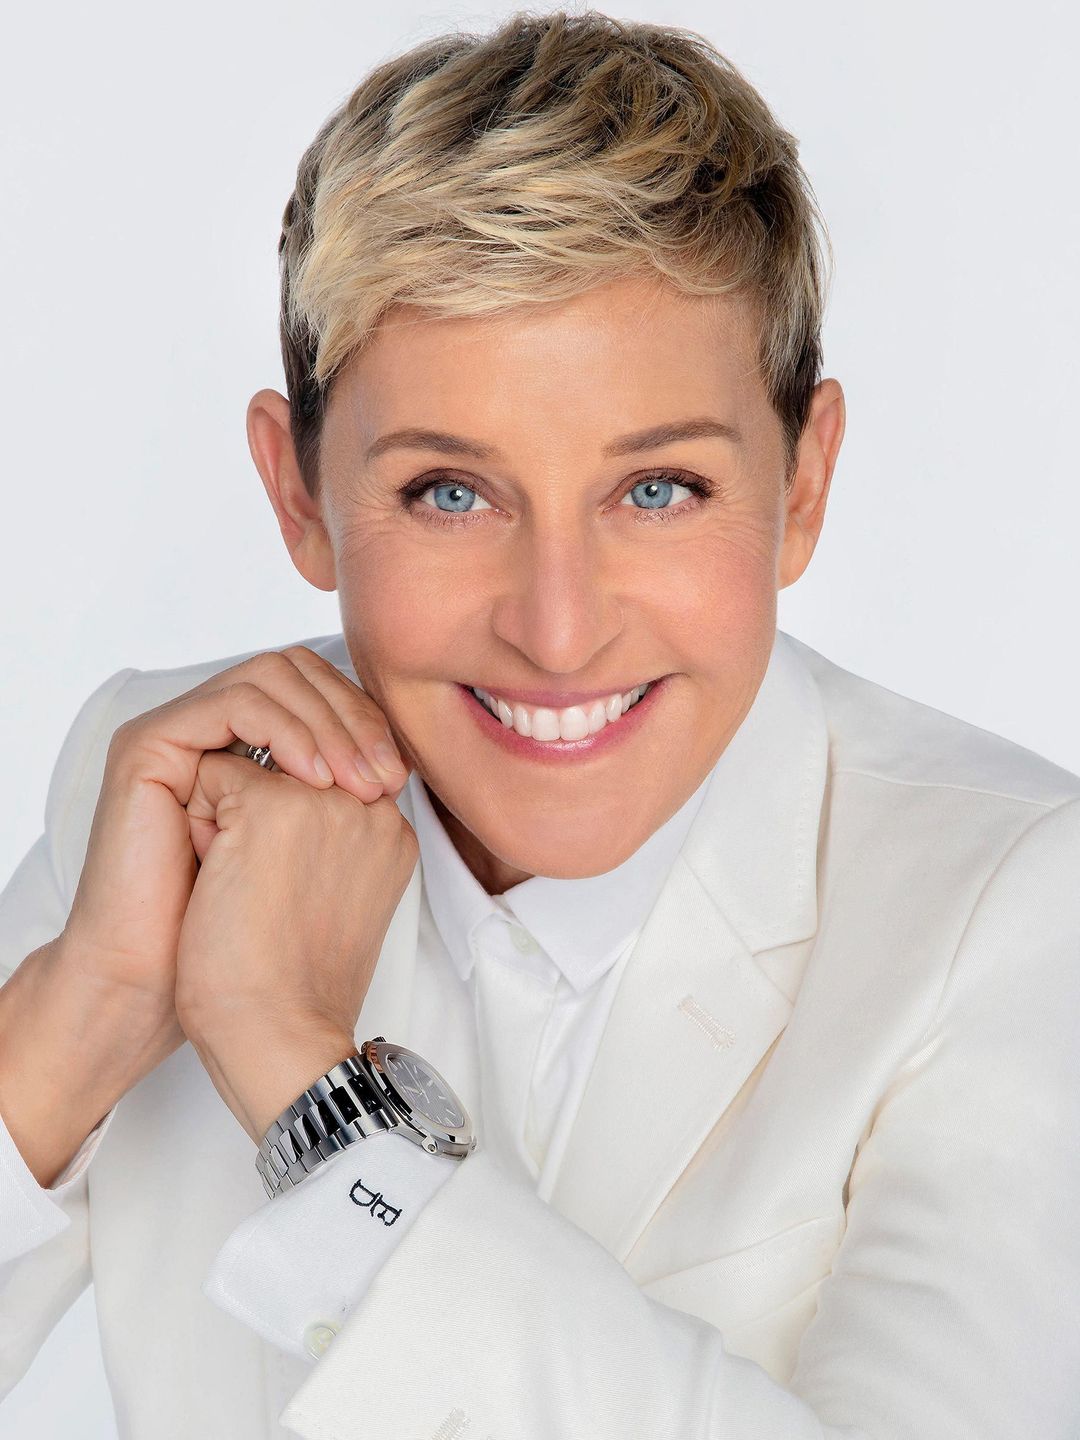 Ellen DeGeneres personal traits